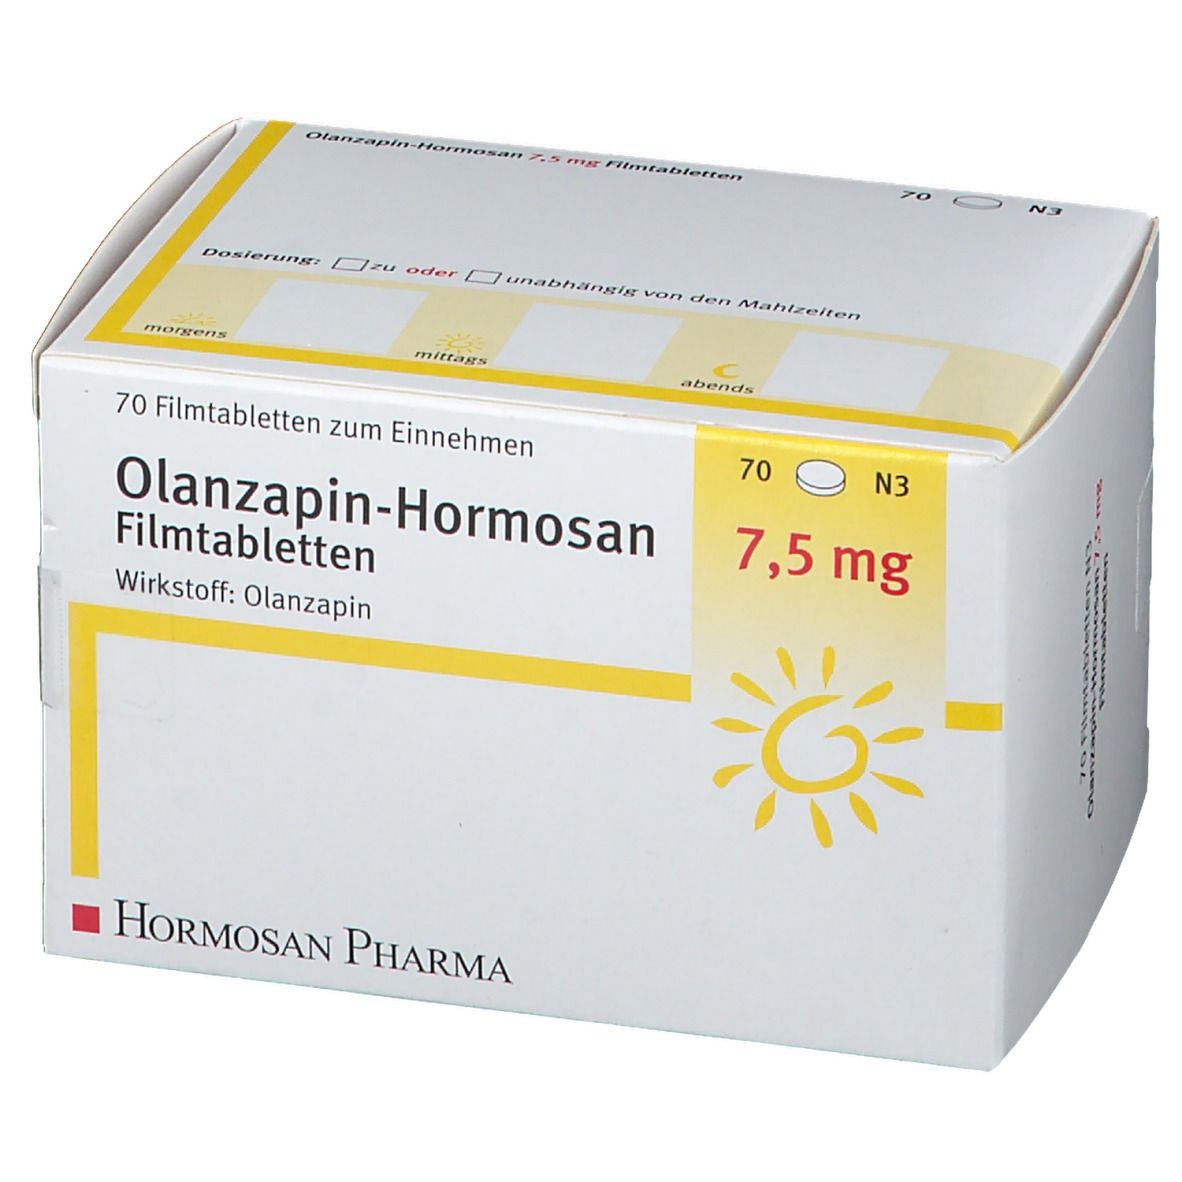 Olanzapin-Hormosan 7,5 mg